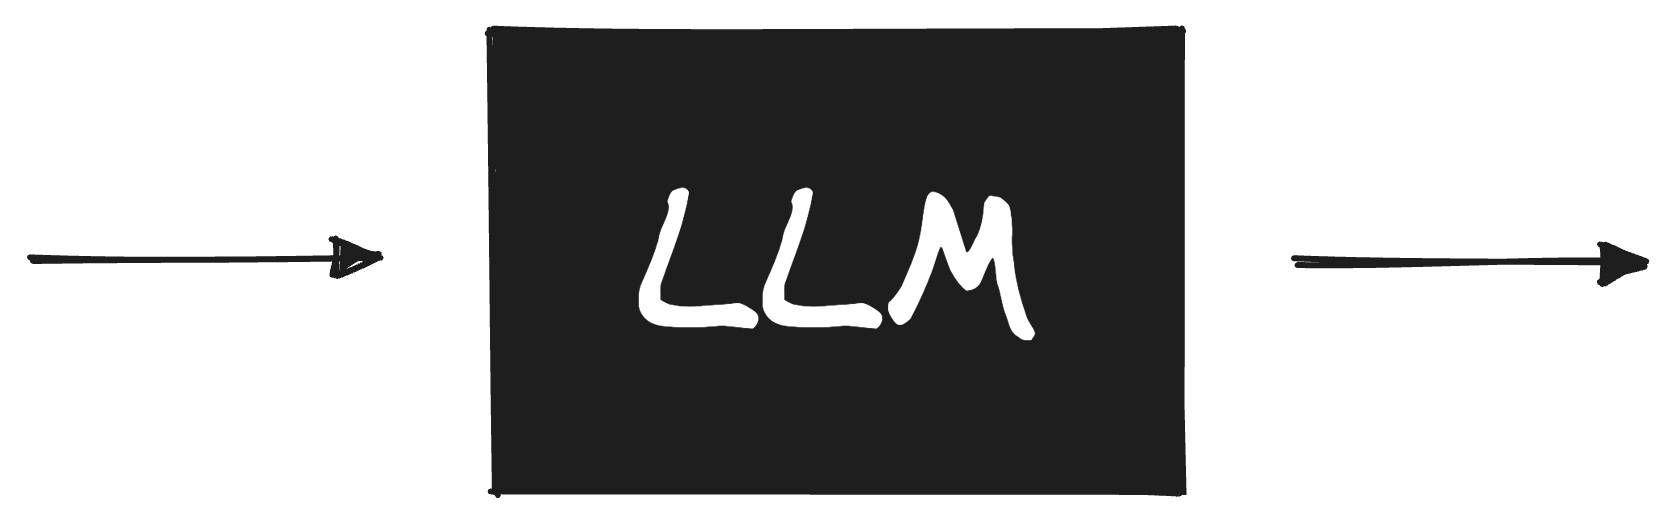 LLM black box